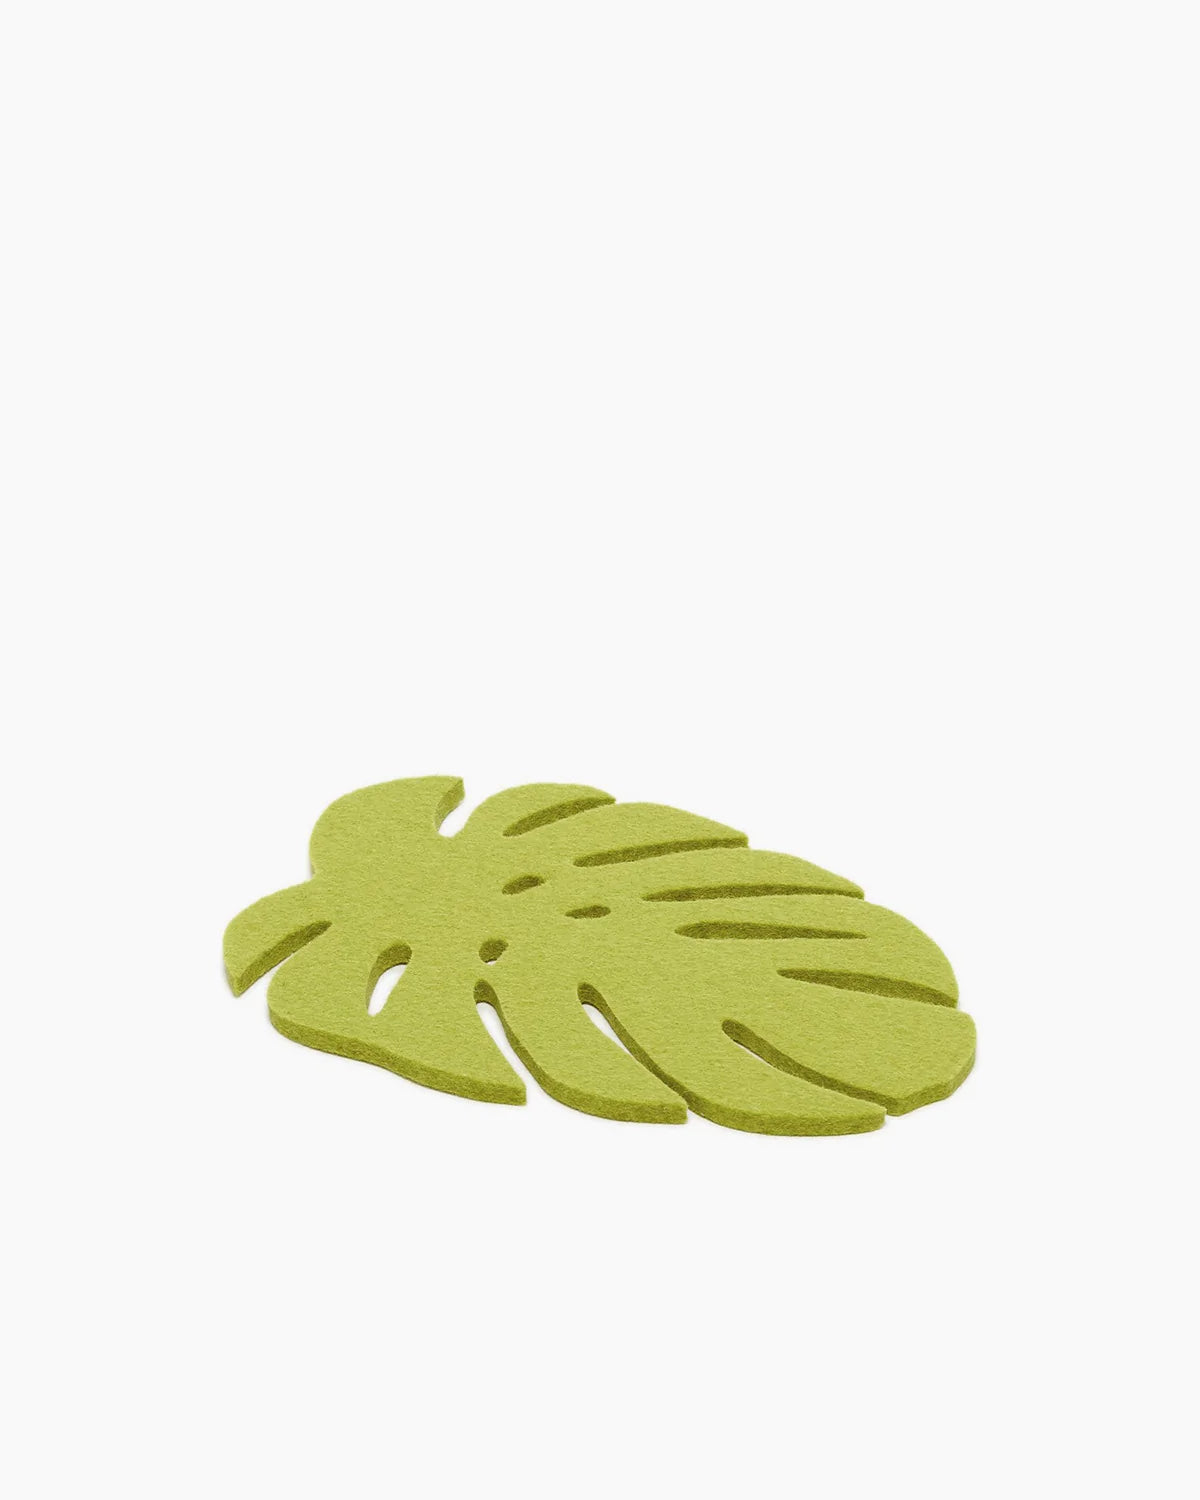 Monstera Leaf Trivet | Small - Graf Lantz - Bluecashew Kitchen Homestead